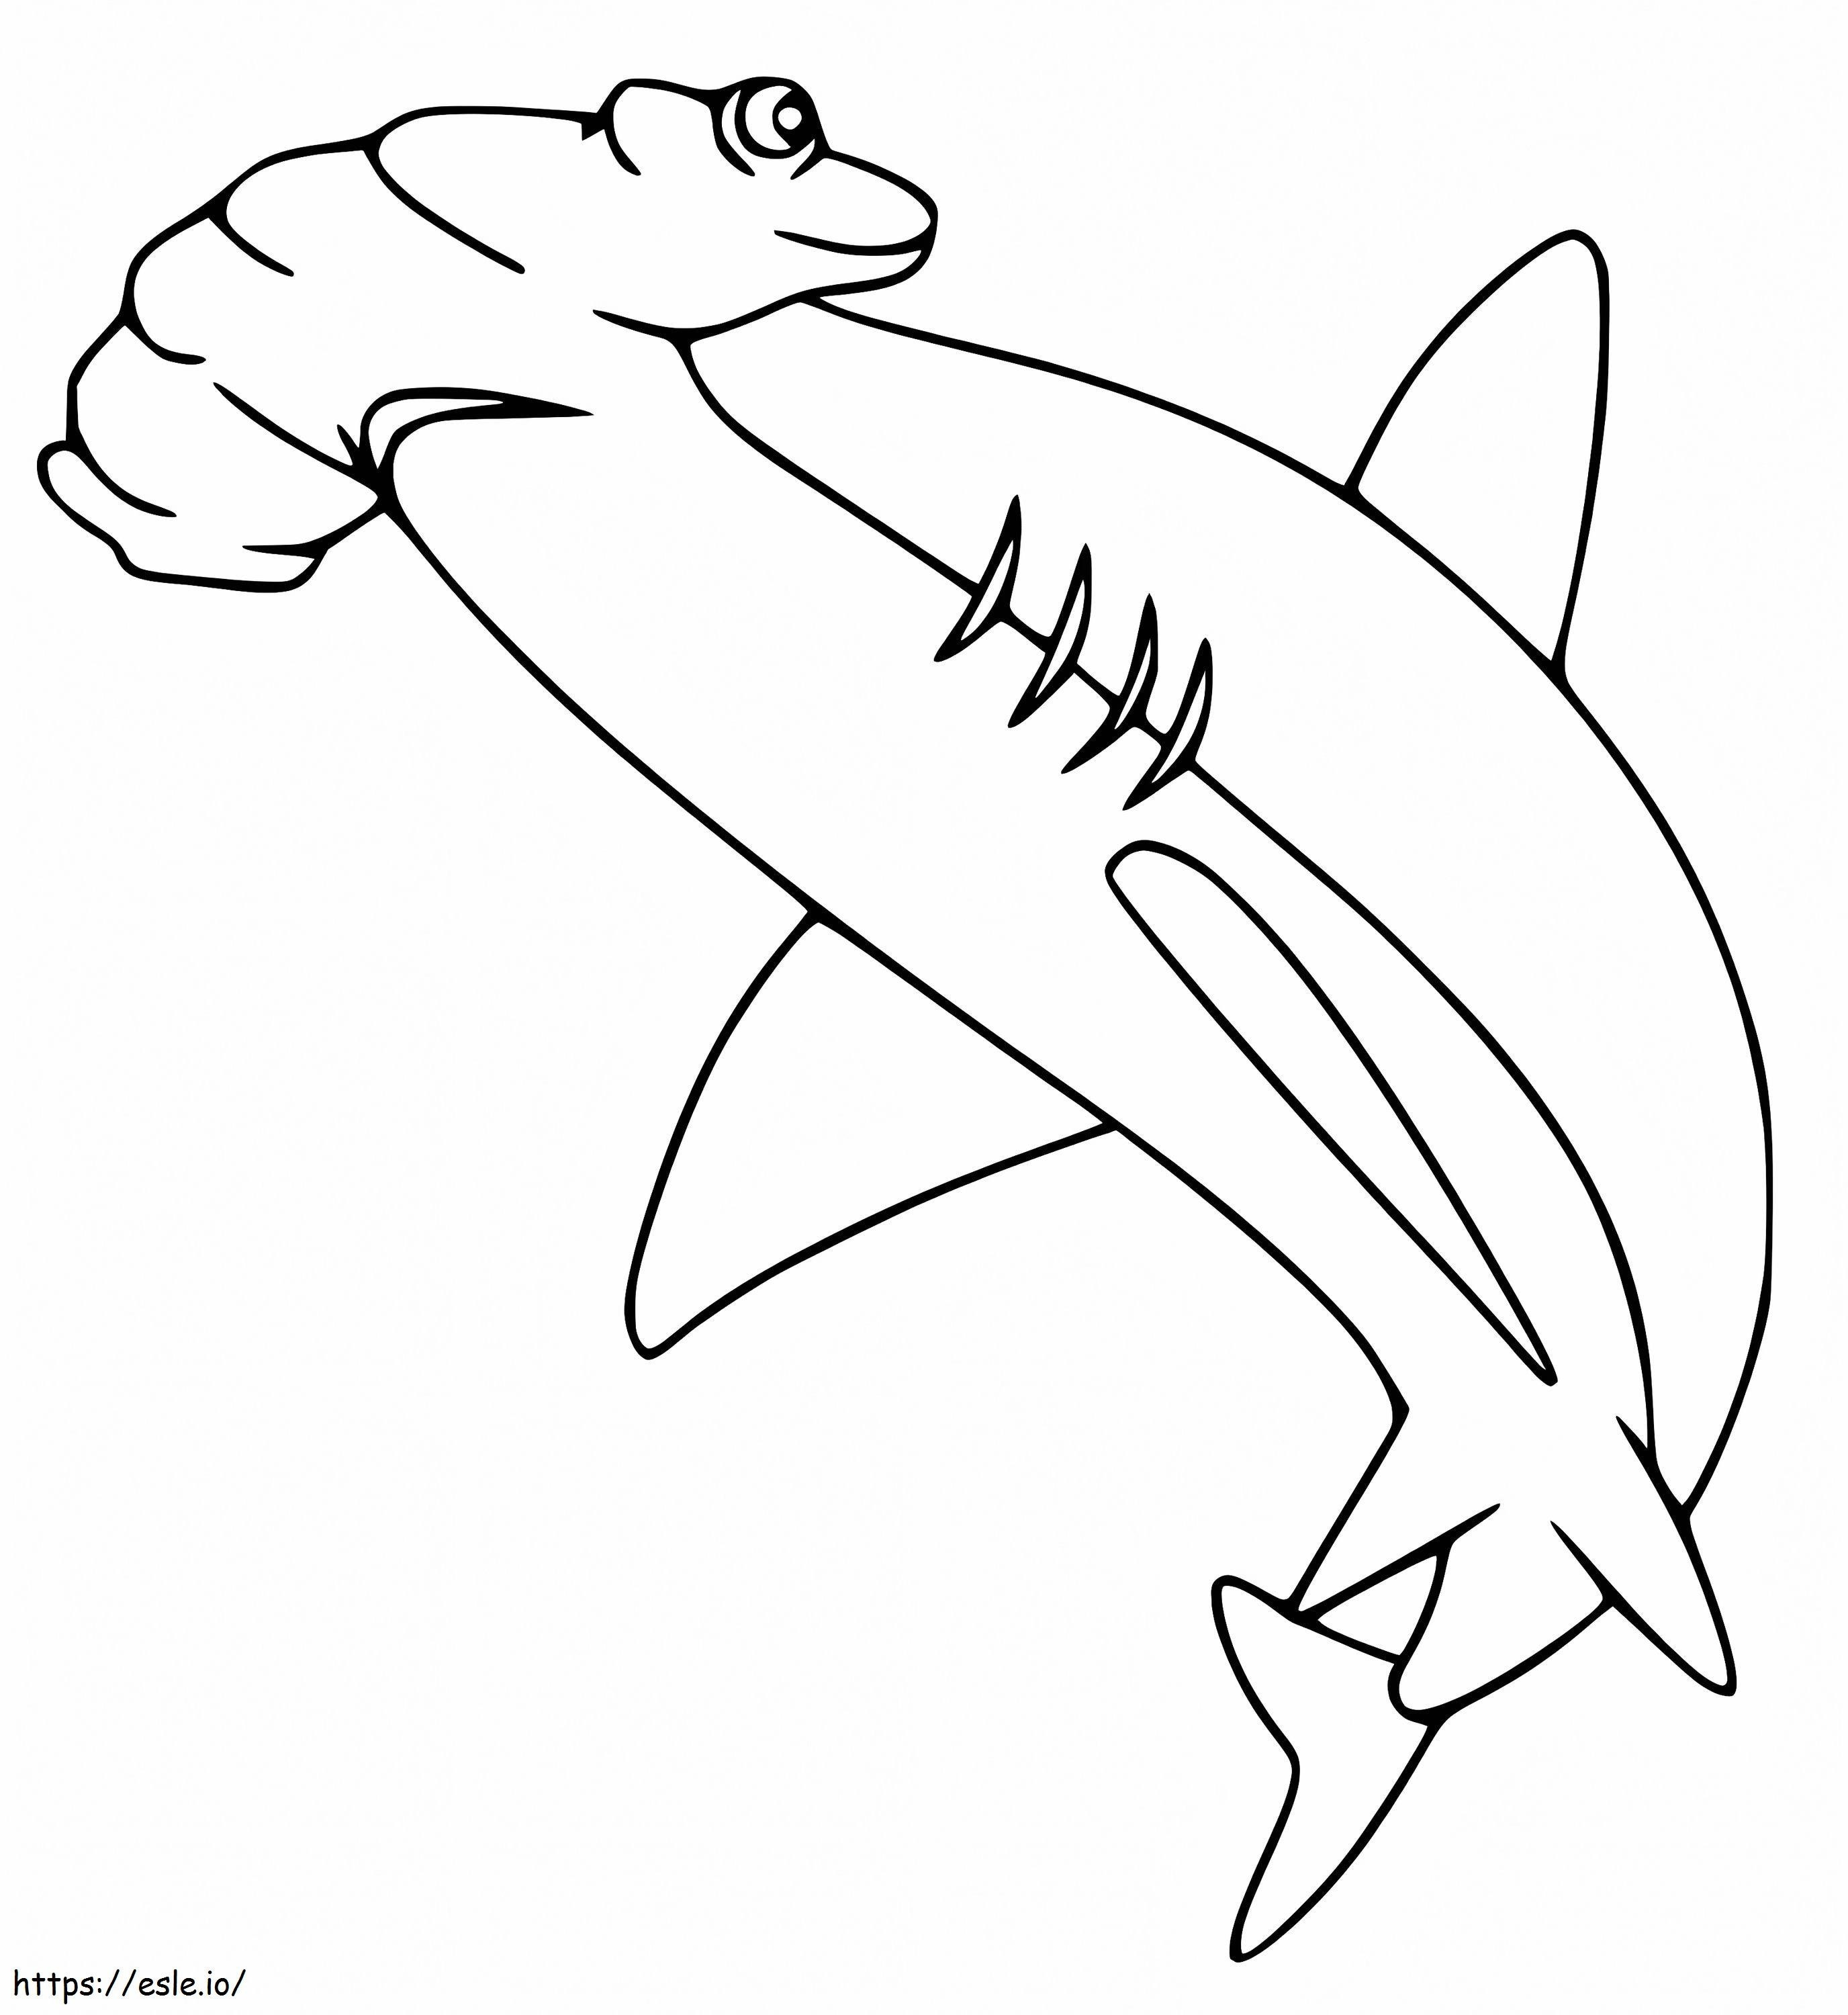 Tubarão-martelo 5 para colorir